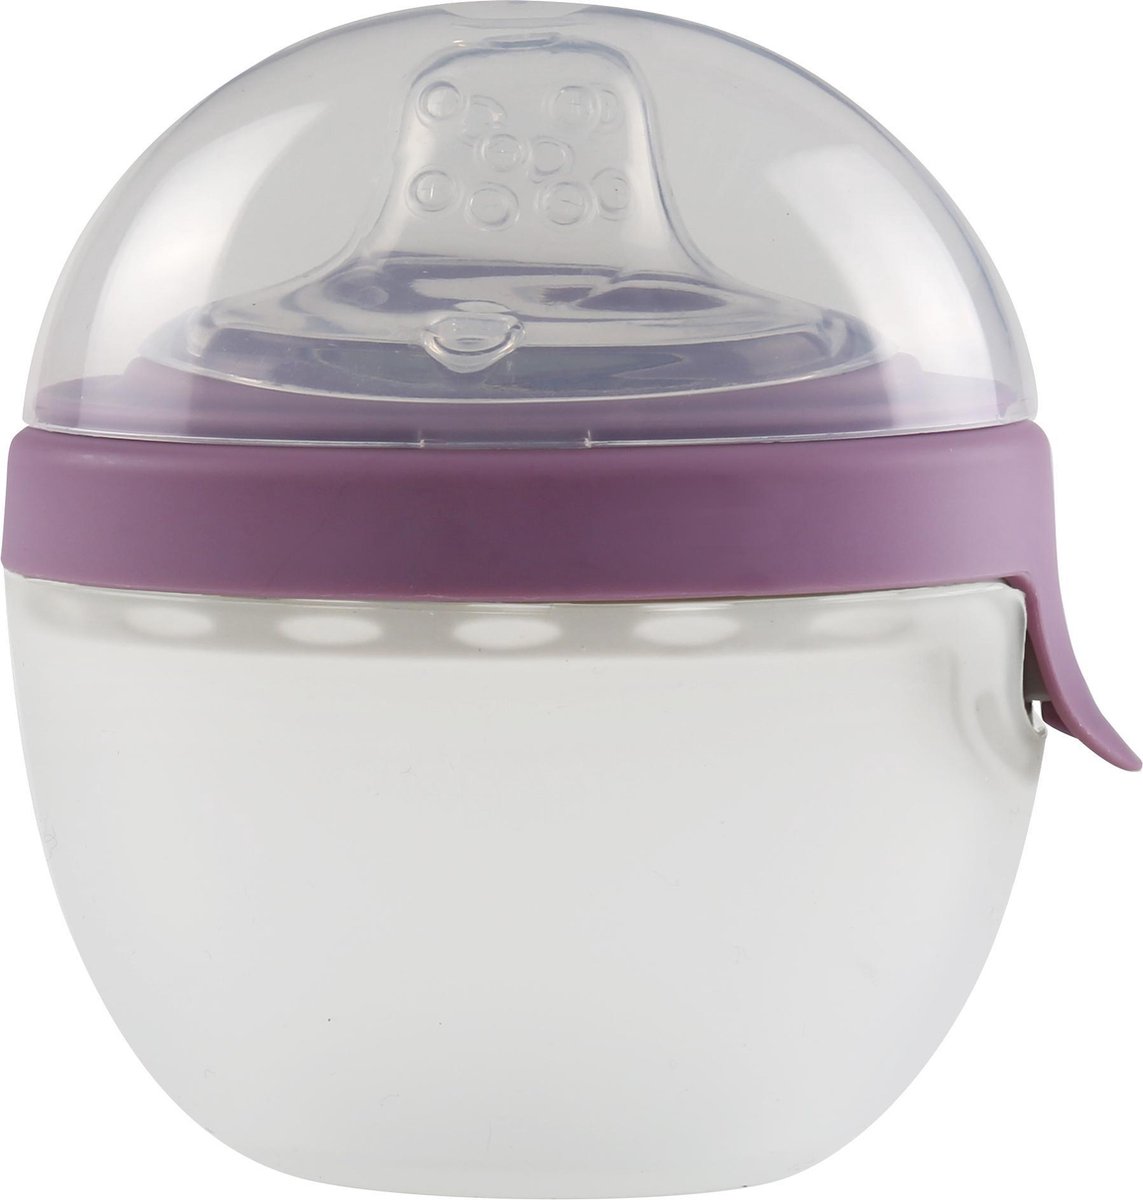 KidsMe 2-in-1 siliconen ovale feeder - Lavendel